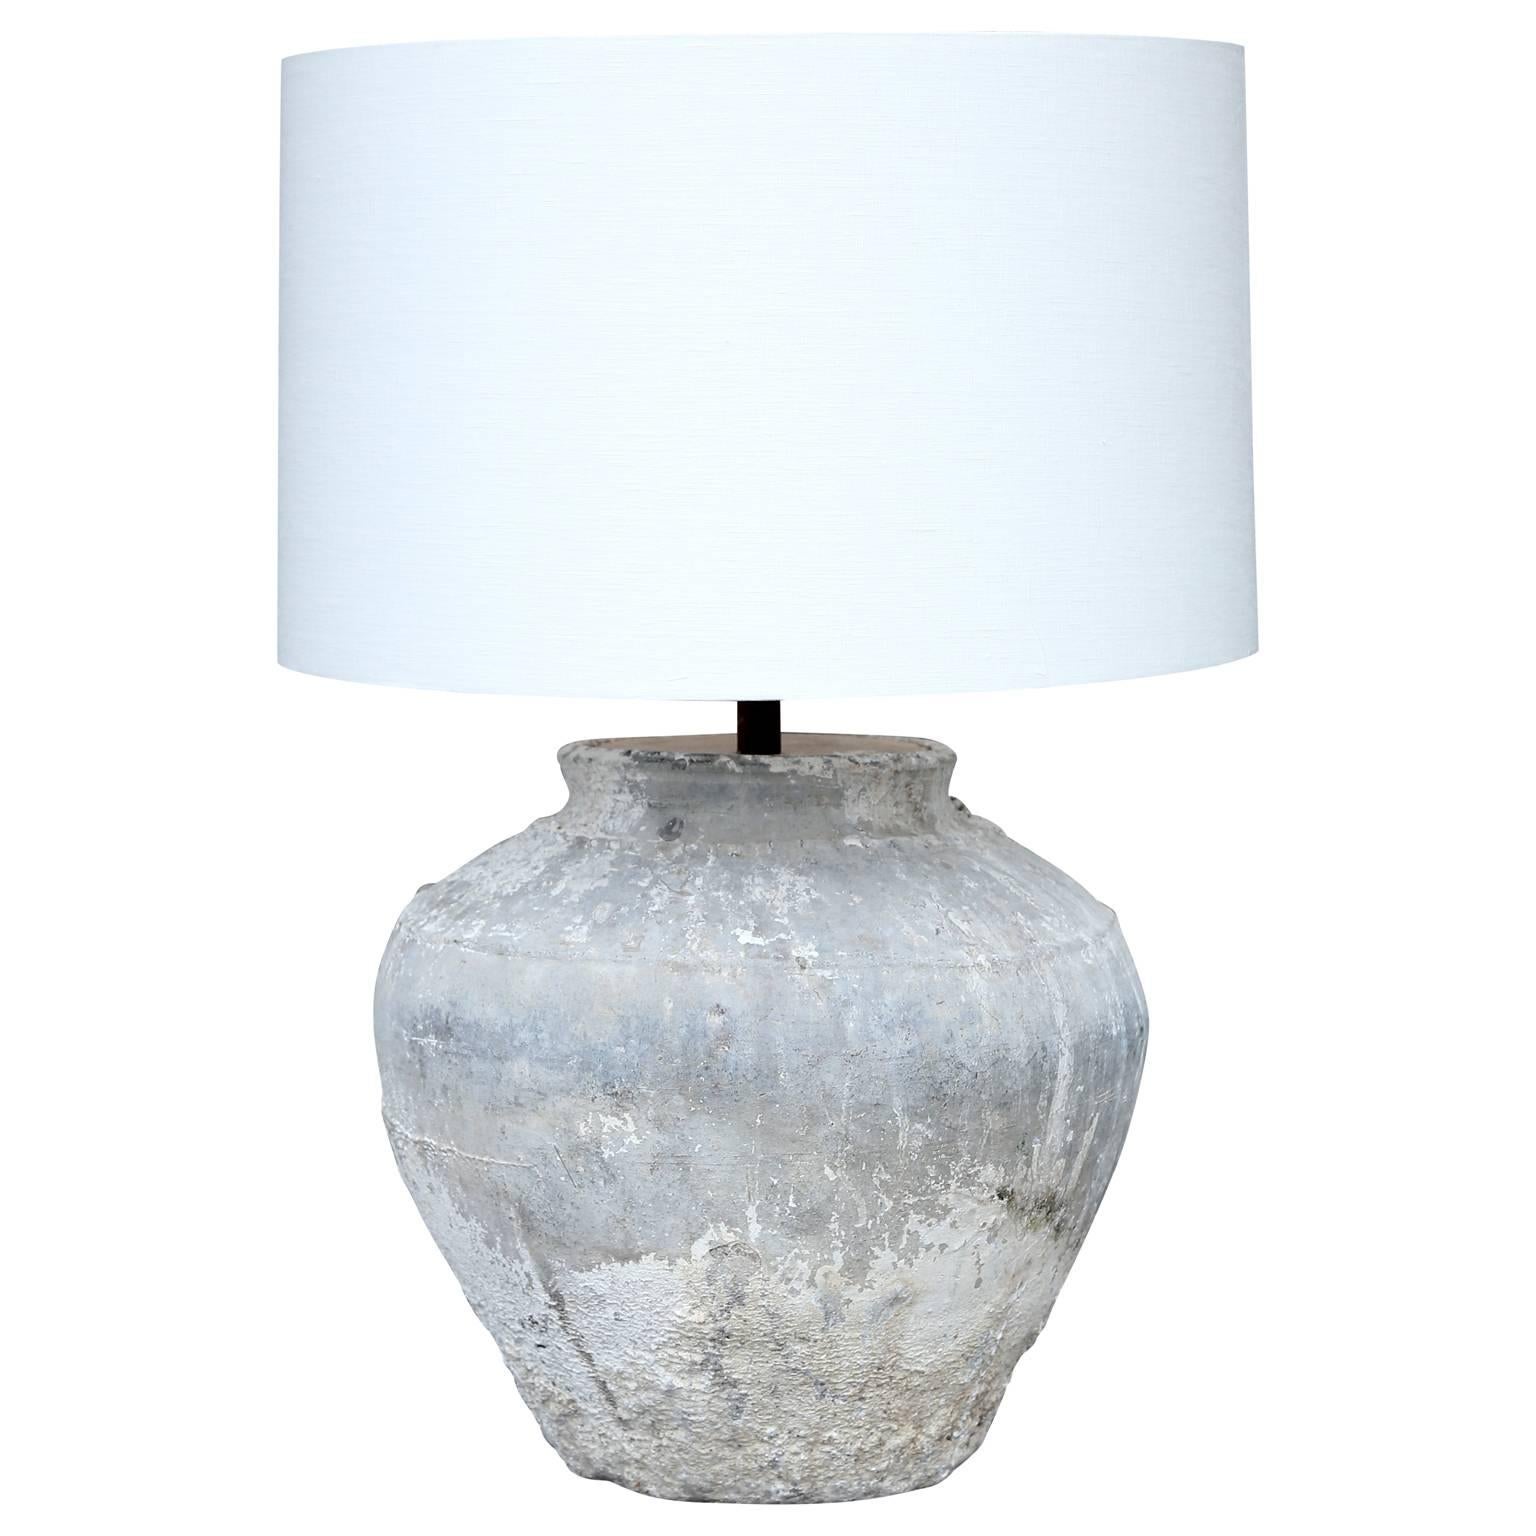 Terracotta Water Jar Lamp